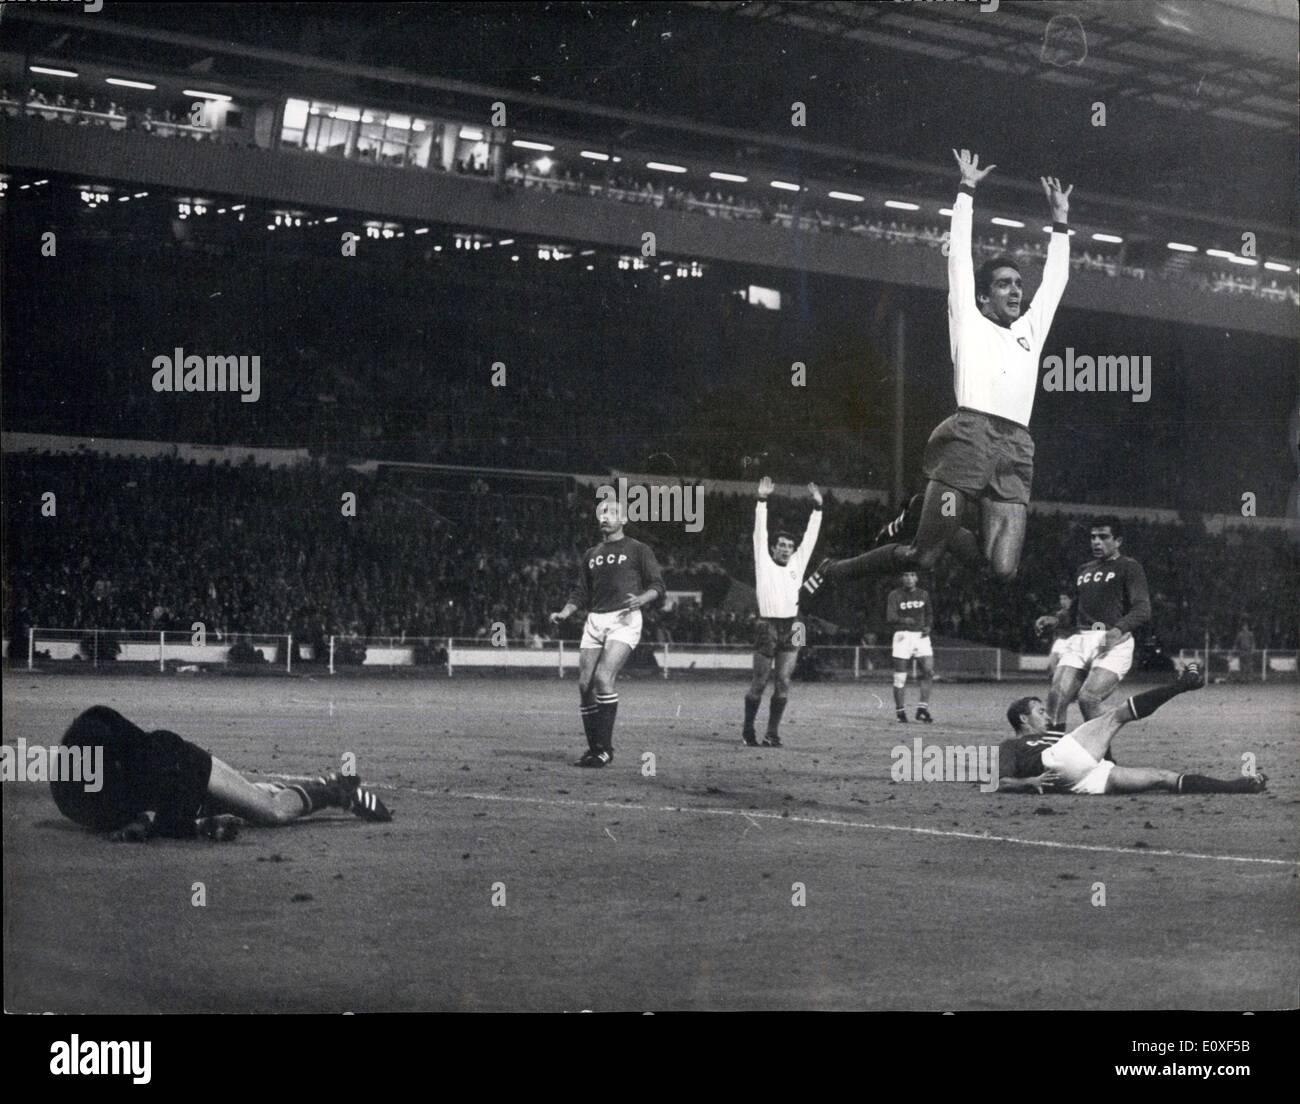 29. Juli 1966 - Fußball-WM: Dritter Platz Finale. Portugal Vs. Russland im Wembley-Stadion. Portugal 2: 1 gewonnen. Foto zeigt Jose Torres (Portugal) springt hoch in die Luft, nachdem er gestern Abend Portugal des Spiels, im Wembley-Stadion erzielt hatte. Stockfoto